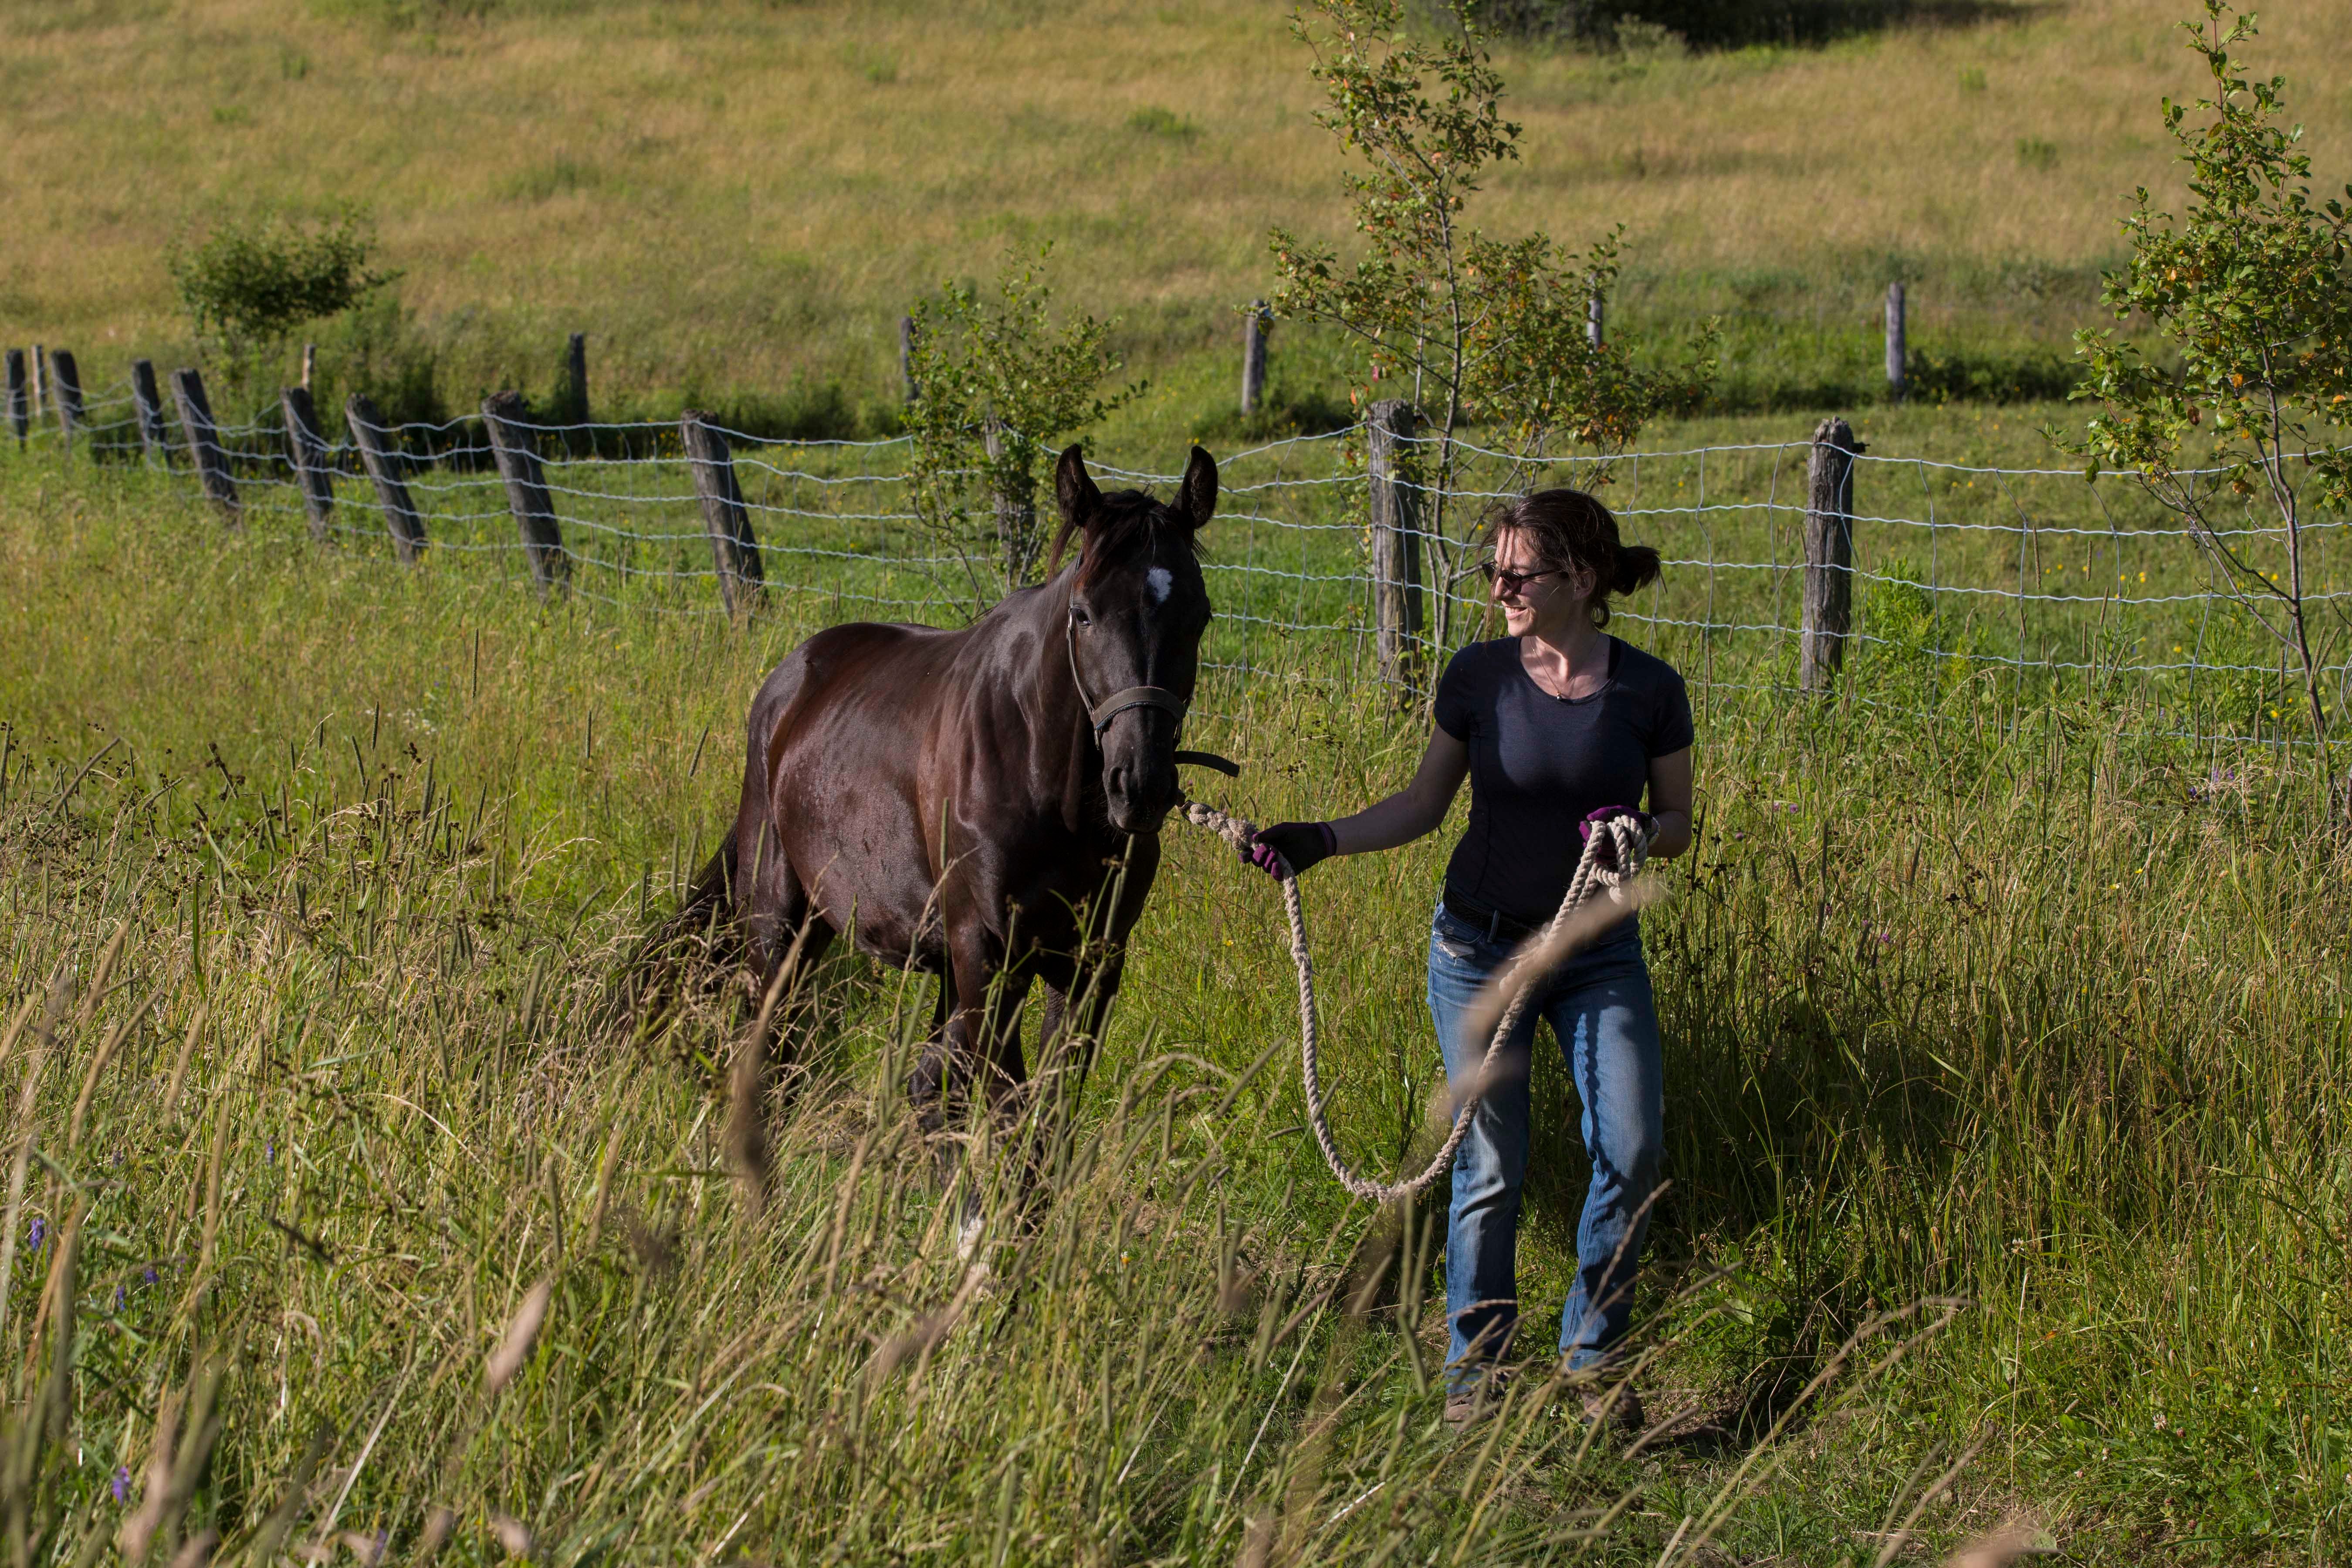 Woman walking horse on grassy field